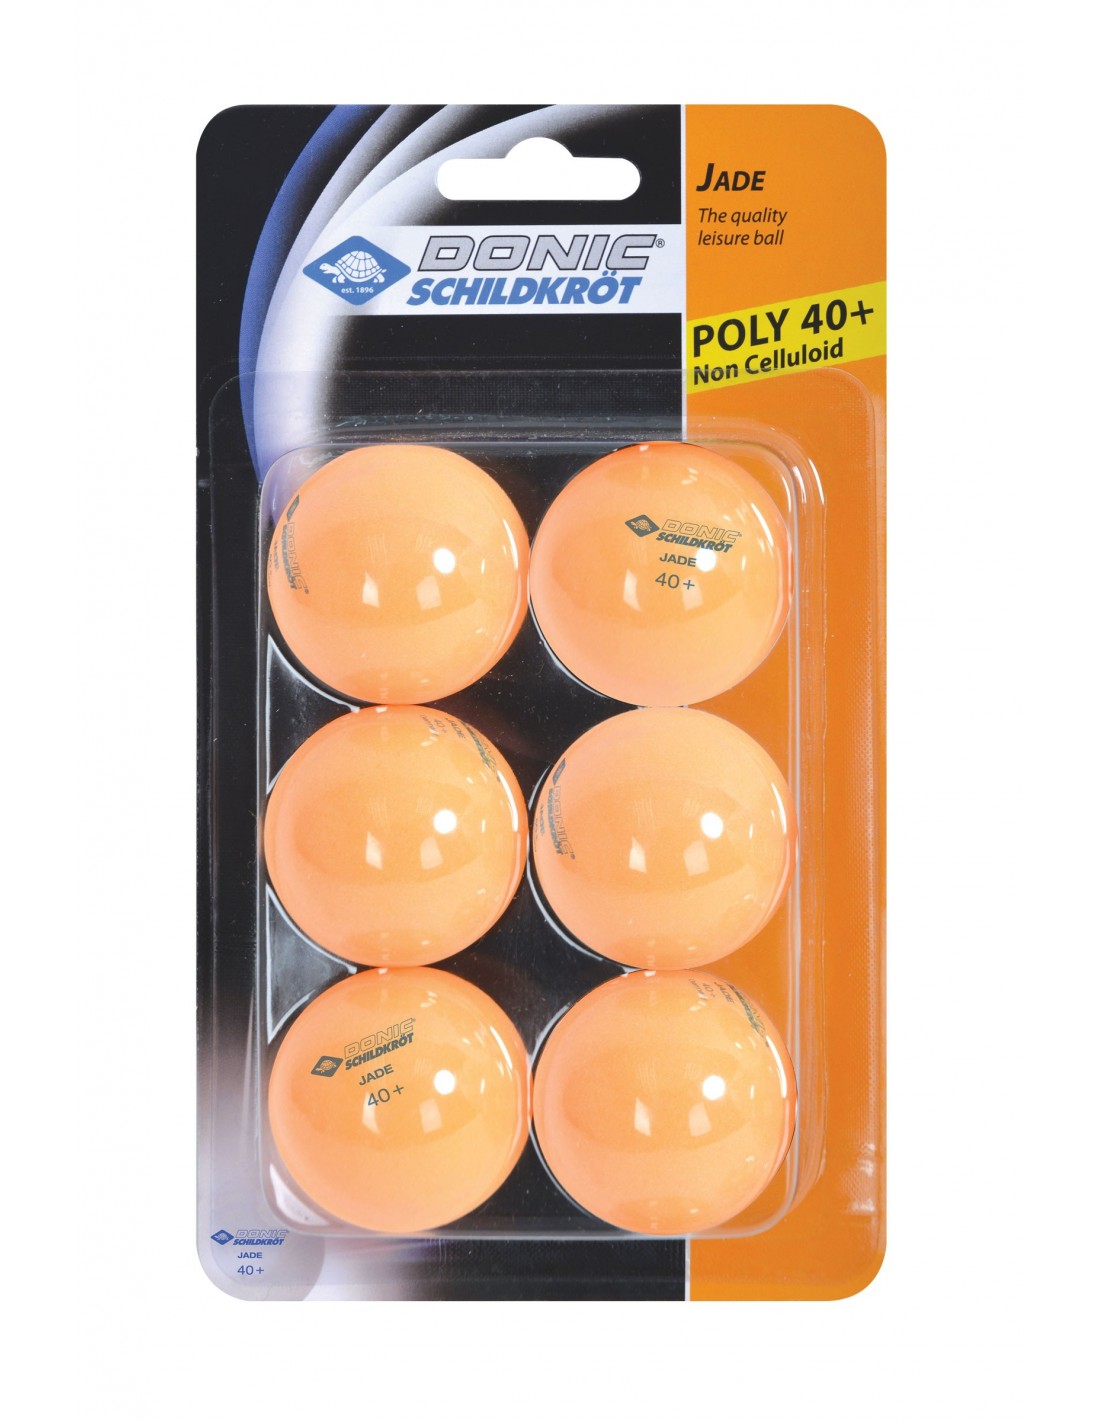 Donic-Schildkröt Tischtennisball Jade, Poly 40+ Qualität, 6 Stk. im Blister, Orange von Donic Schidkröt Accessoires